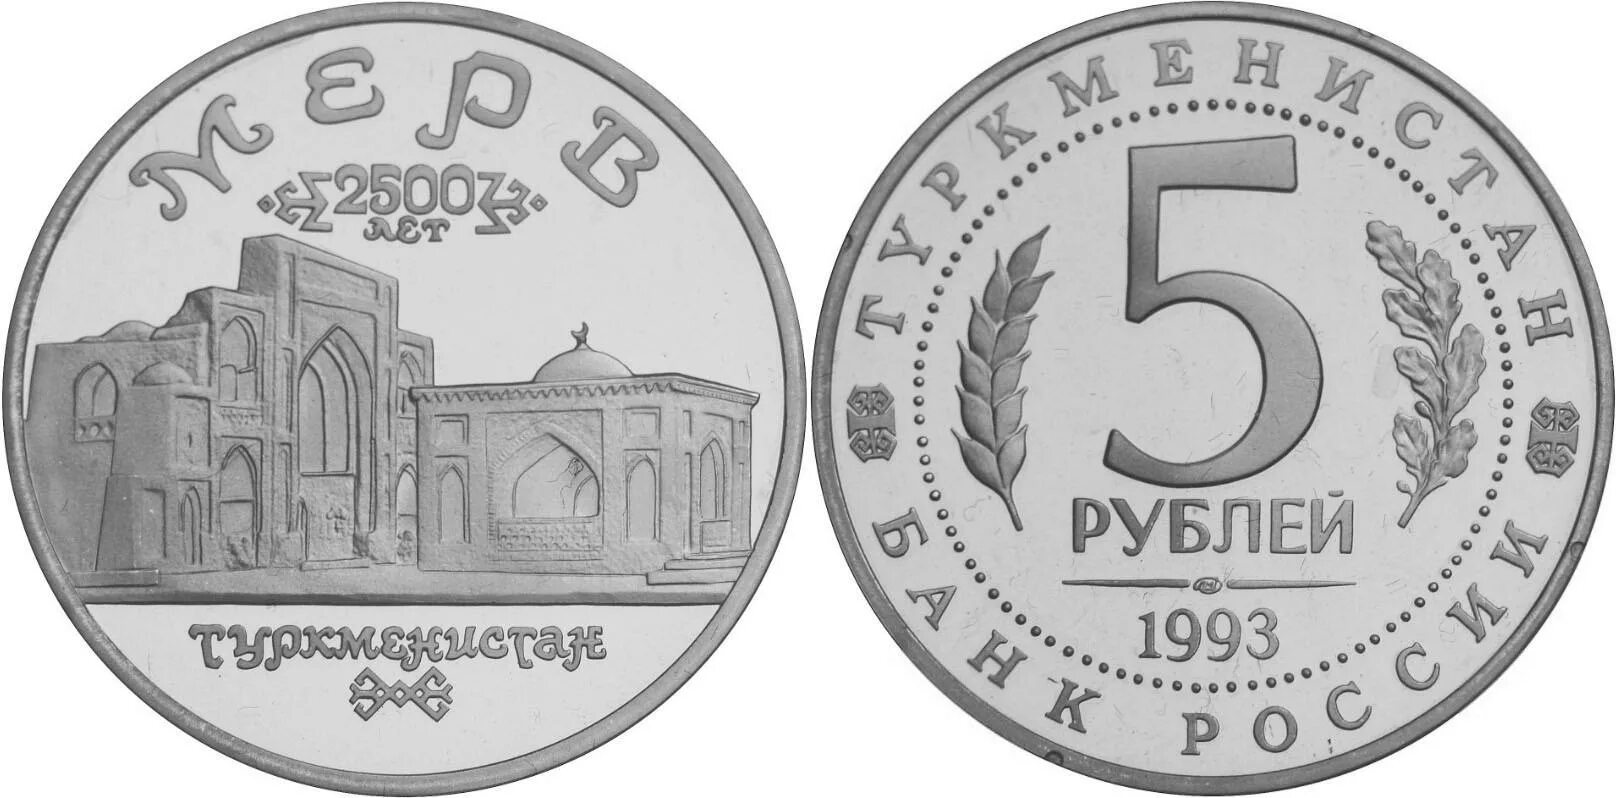 5 рублей 1993. Монета 5 руб. 1993. Монета 5 рублей 1993. Монета 5 рублей 1993 года.